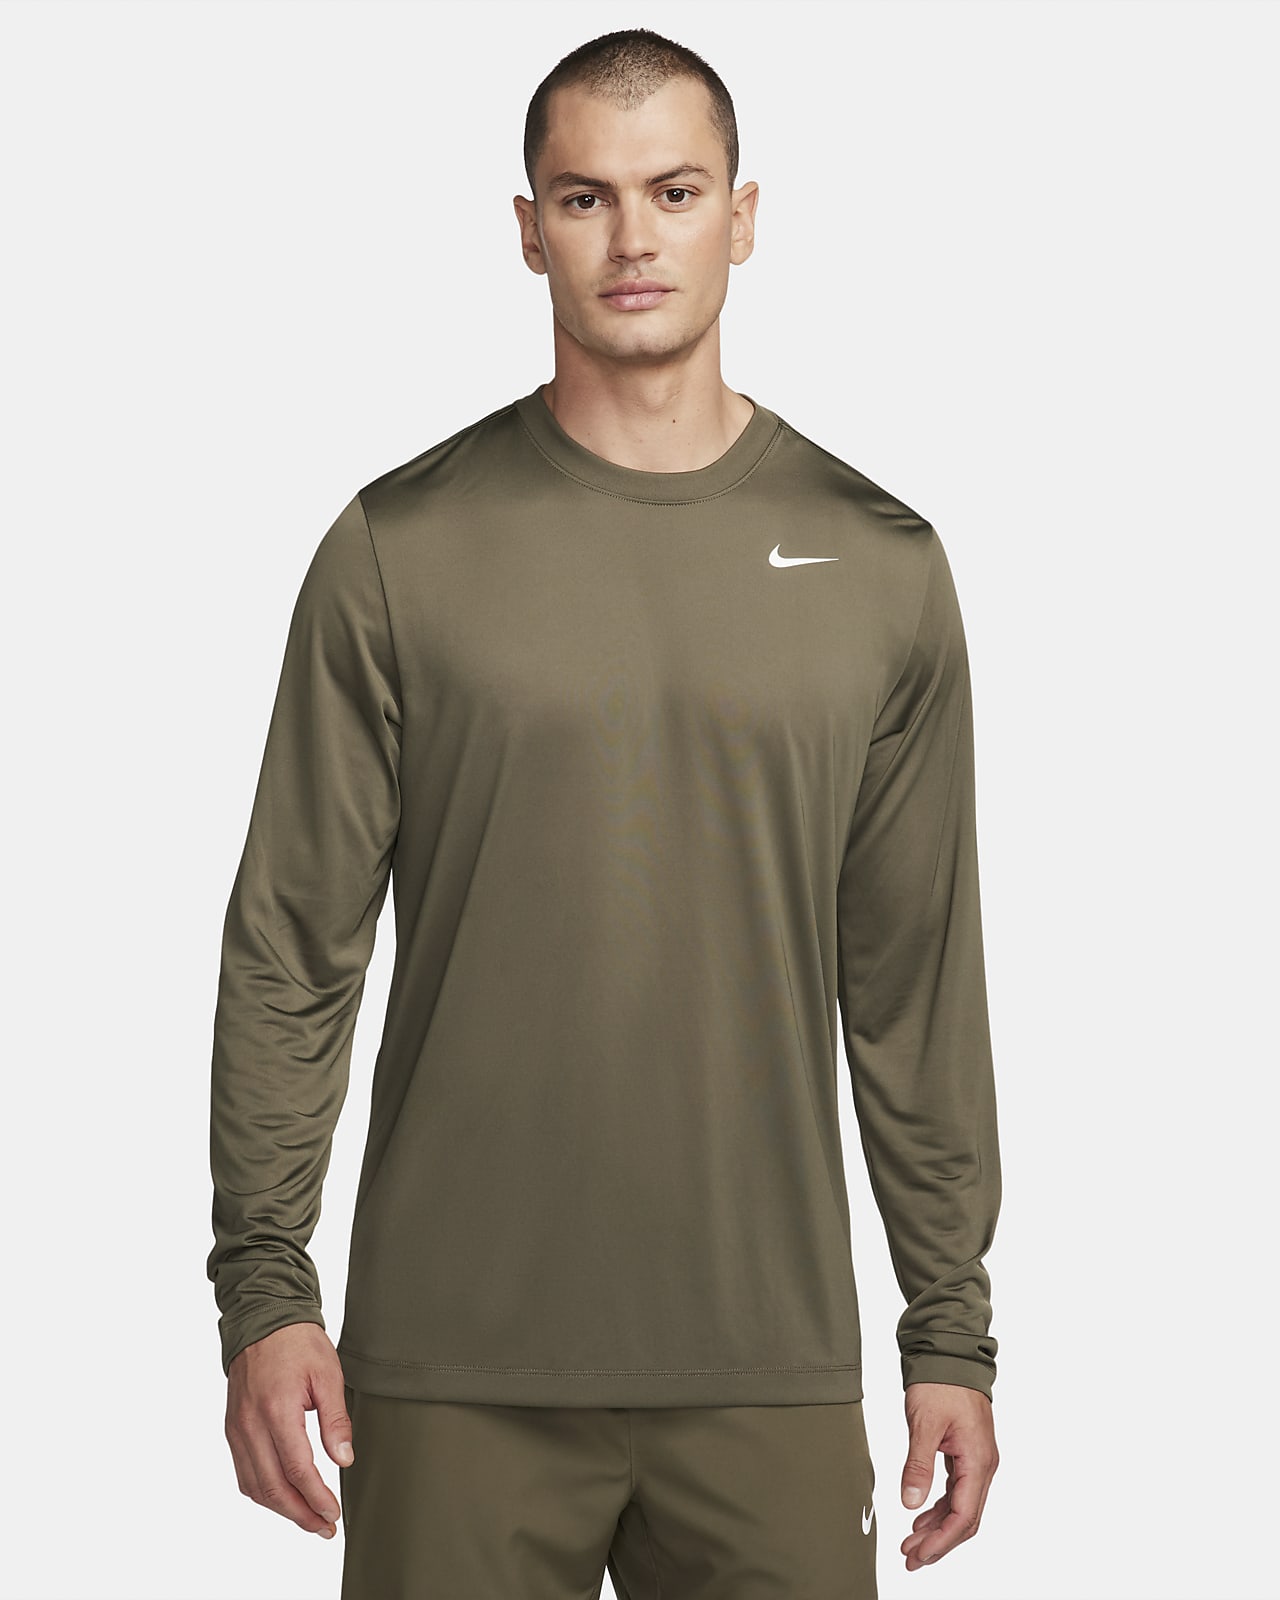  Nike Men's Training Top T-Shirt, Long Sleeve, Nike